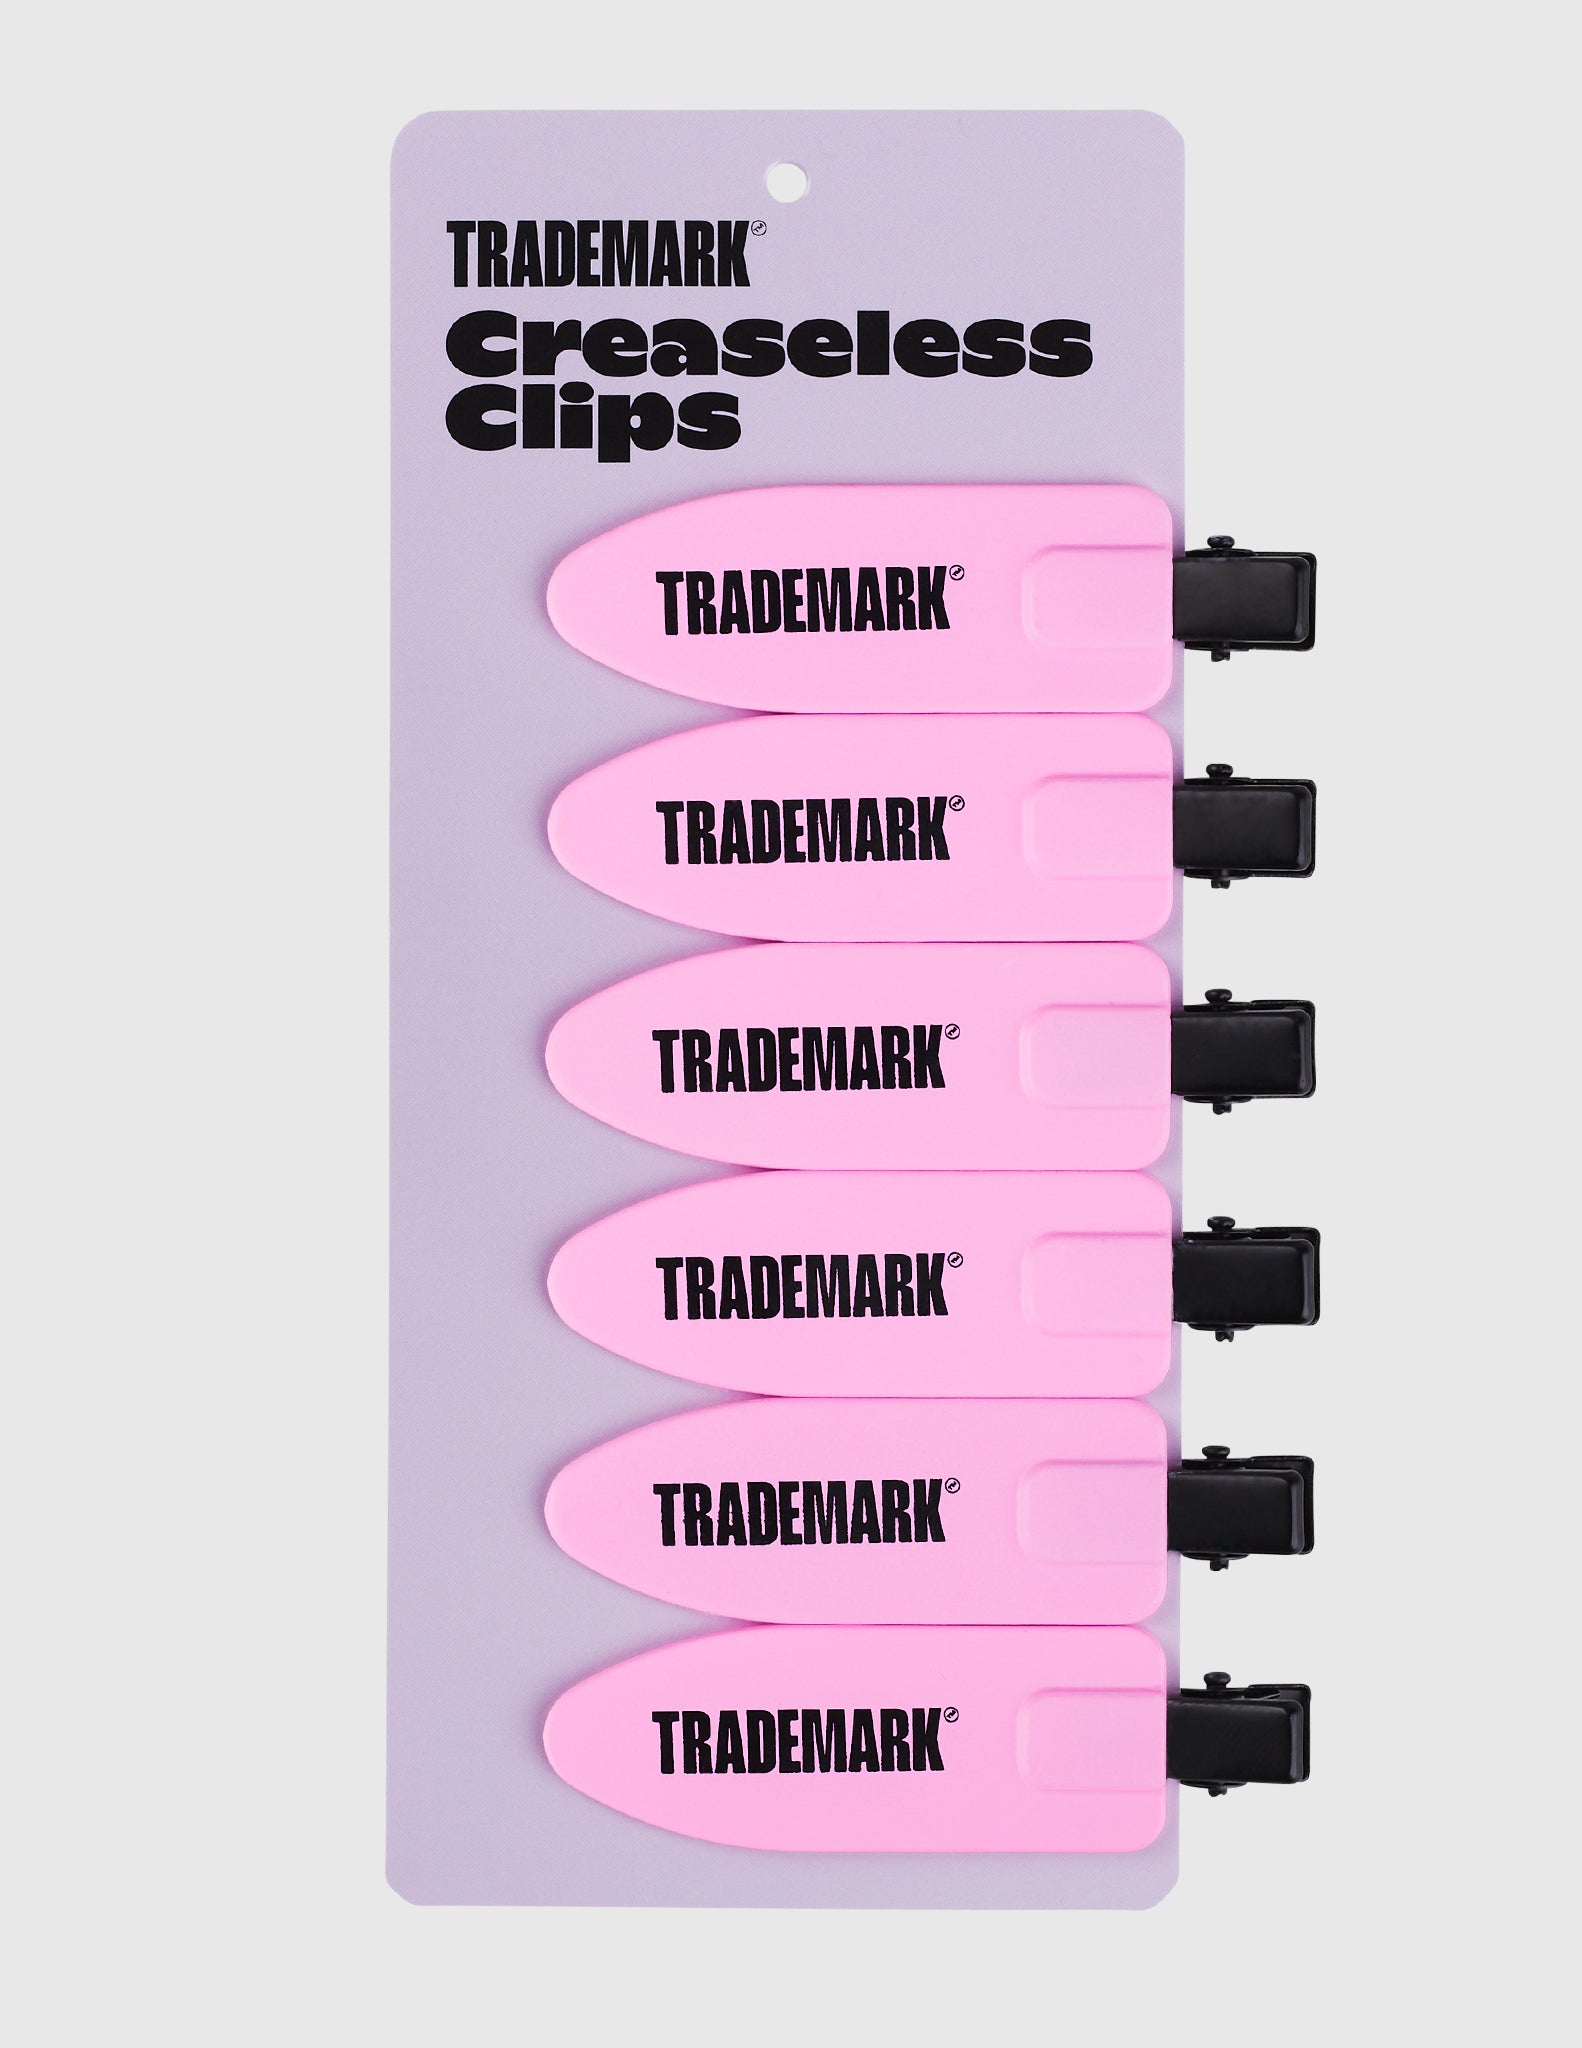 Creaseless Clips - Trademark Beauty